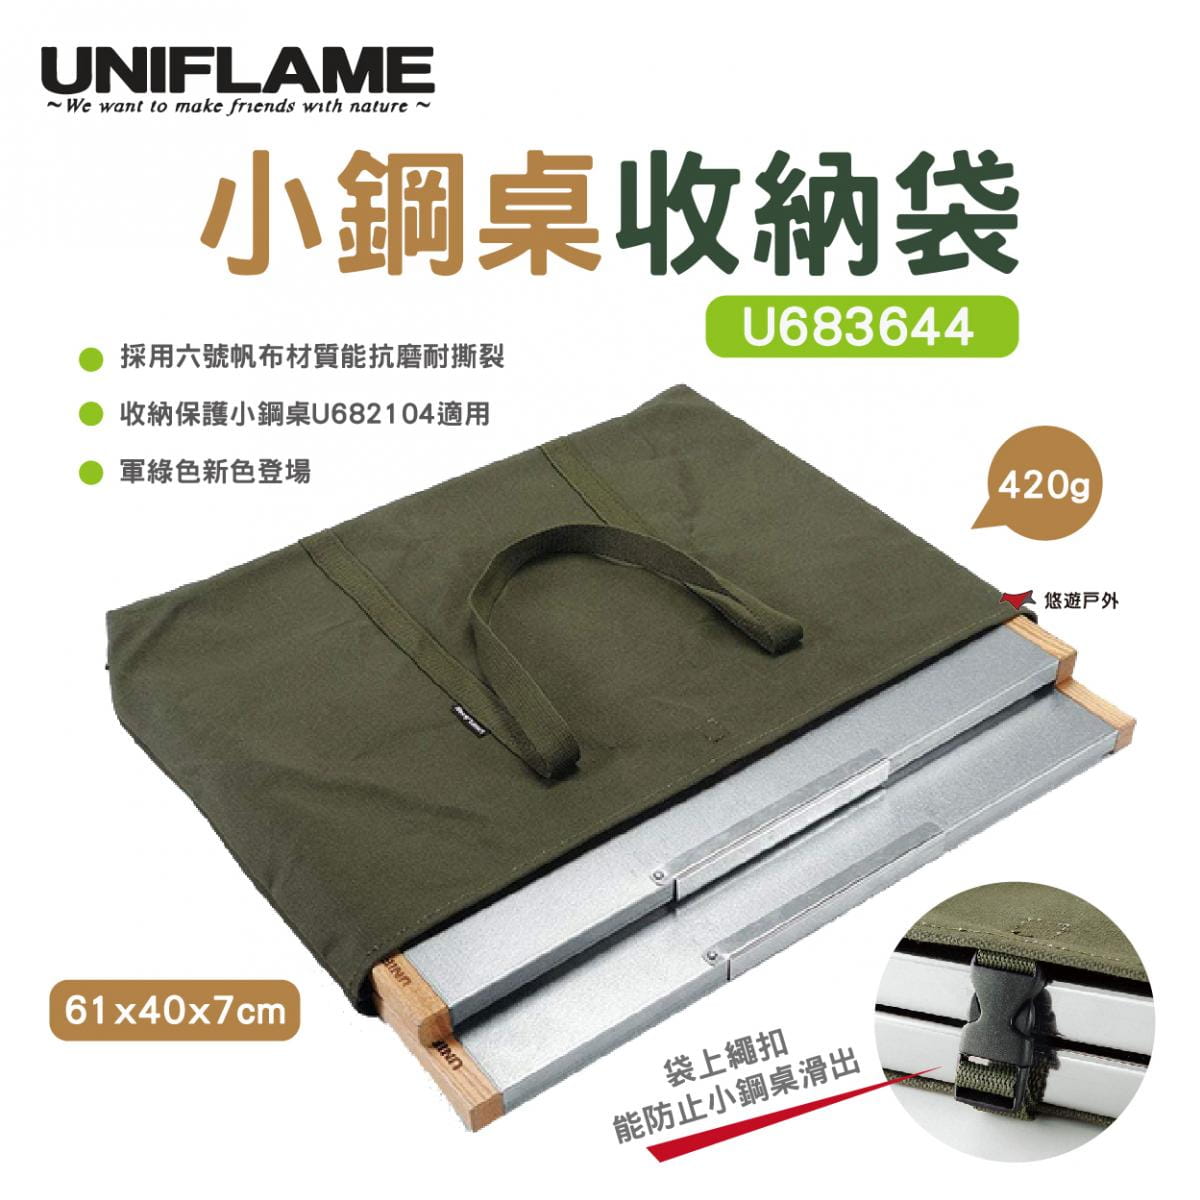 【UNIFLAME】小鋼桌收納袋 U683644 (悠遊戶外) 0